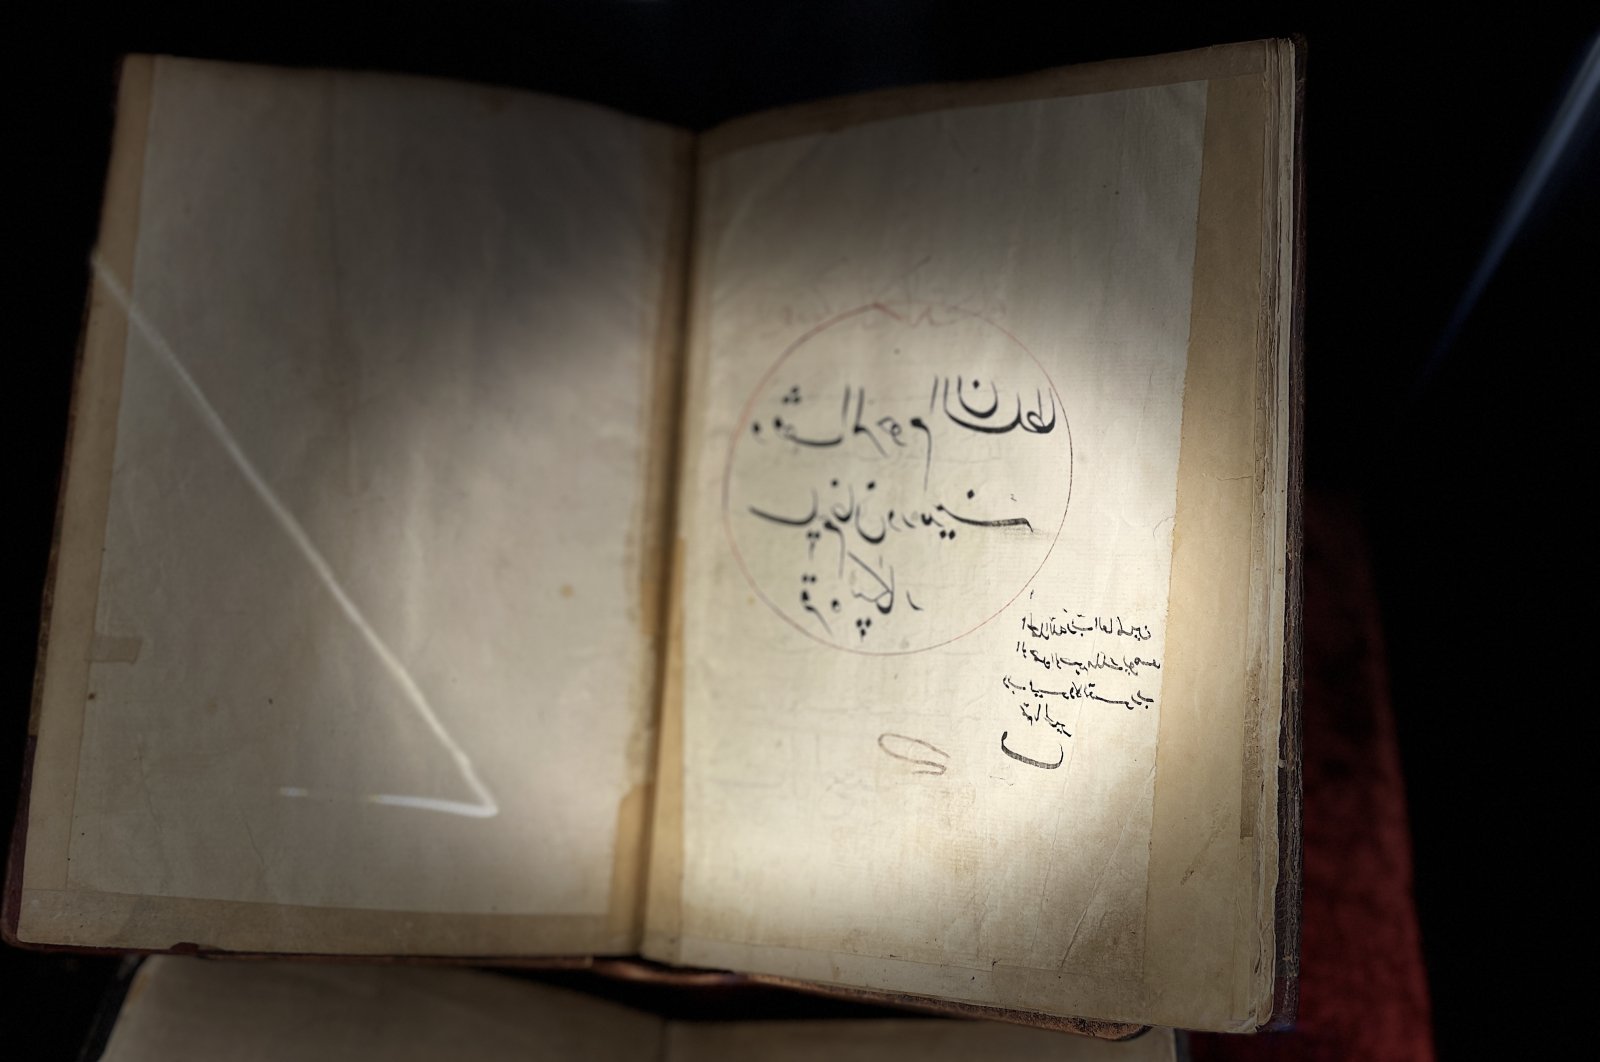 450-year-old handwritten Quran found in historical Turkish mosque.